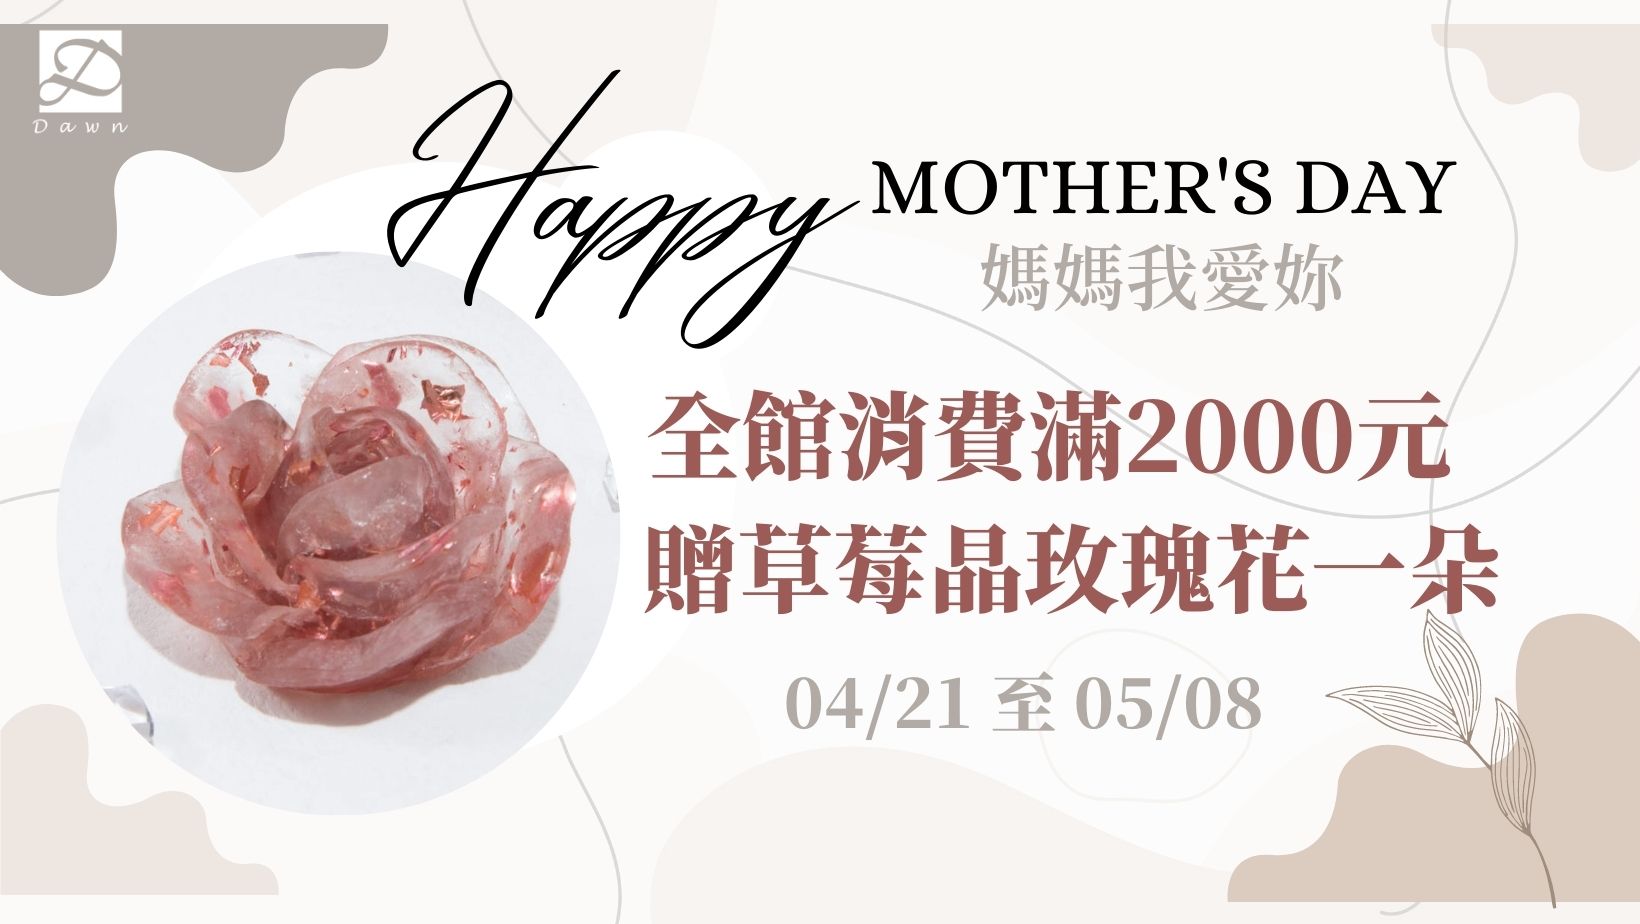 媽媽我愛妳 ♥ 滿2000元贈草莓晶玫瑰花一朵 - 111/04/21至05/08 23:59止